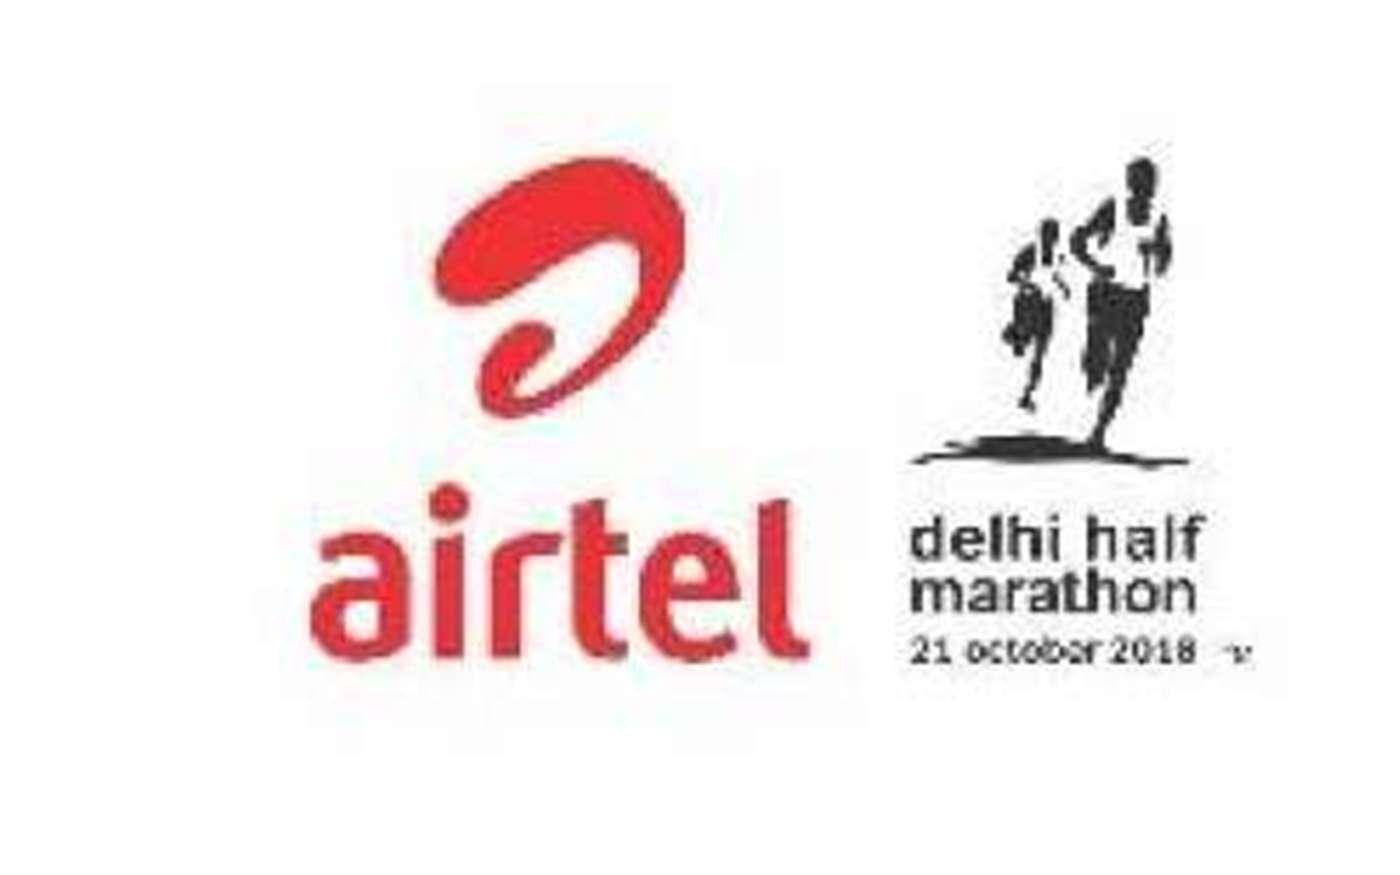 एयरटेल दिल्ली हाफ मैराथन में खिताब बचाने उतरेंगे नितेन्द्र